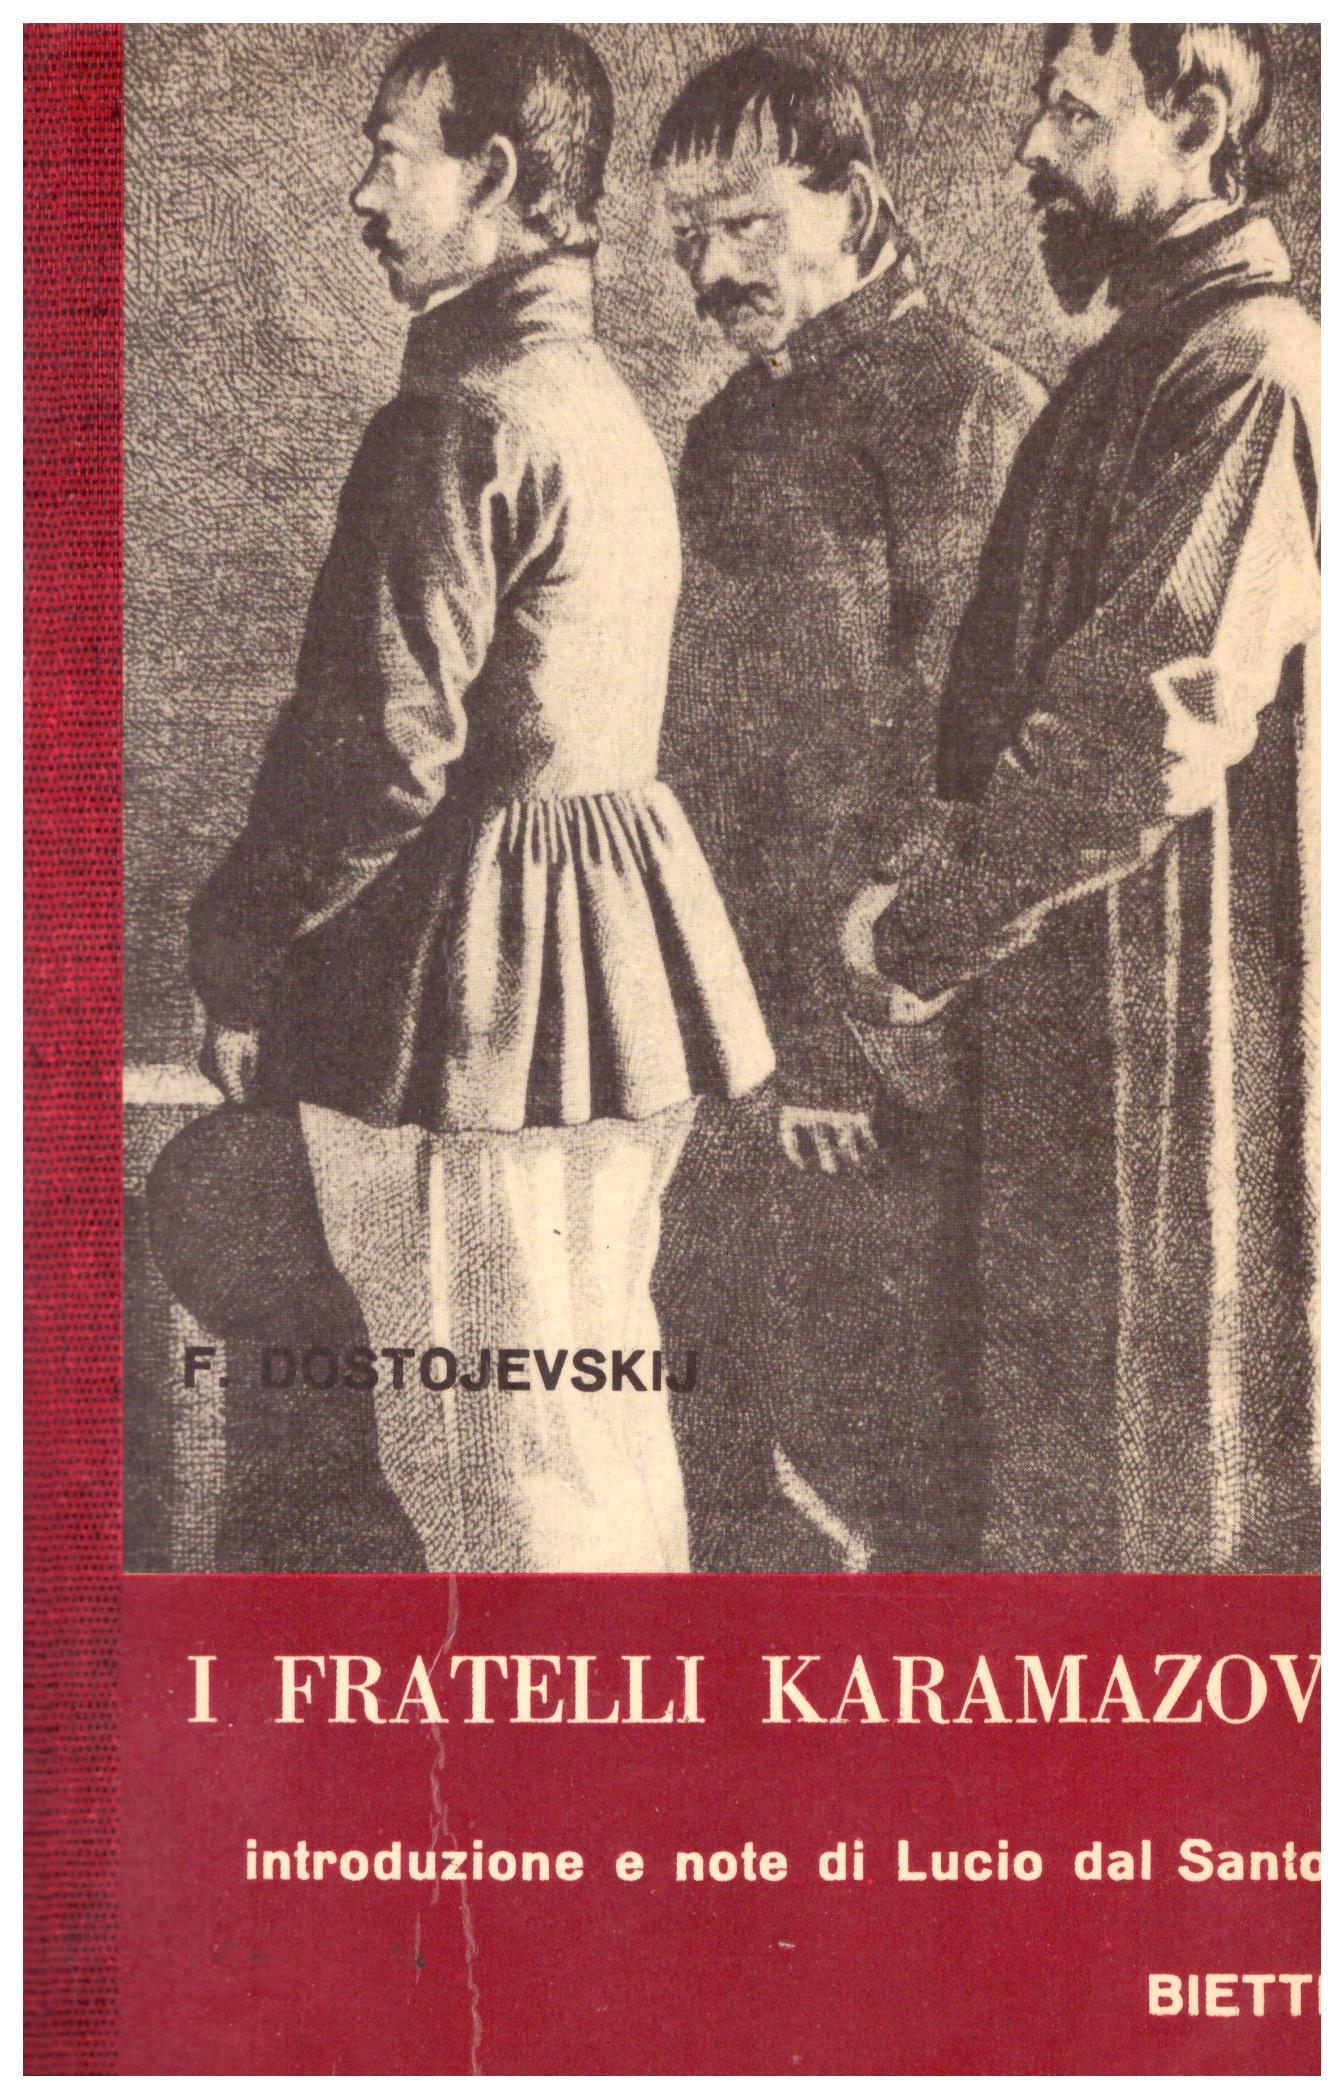 Titolo: I Fratelli Karamazov Autore: Fedor Dostojevsij Editore: Bietti, 1968